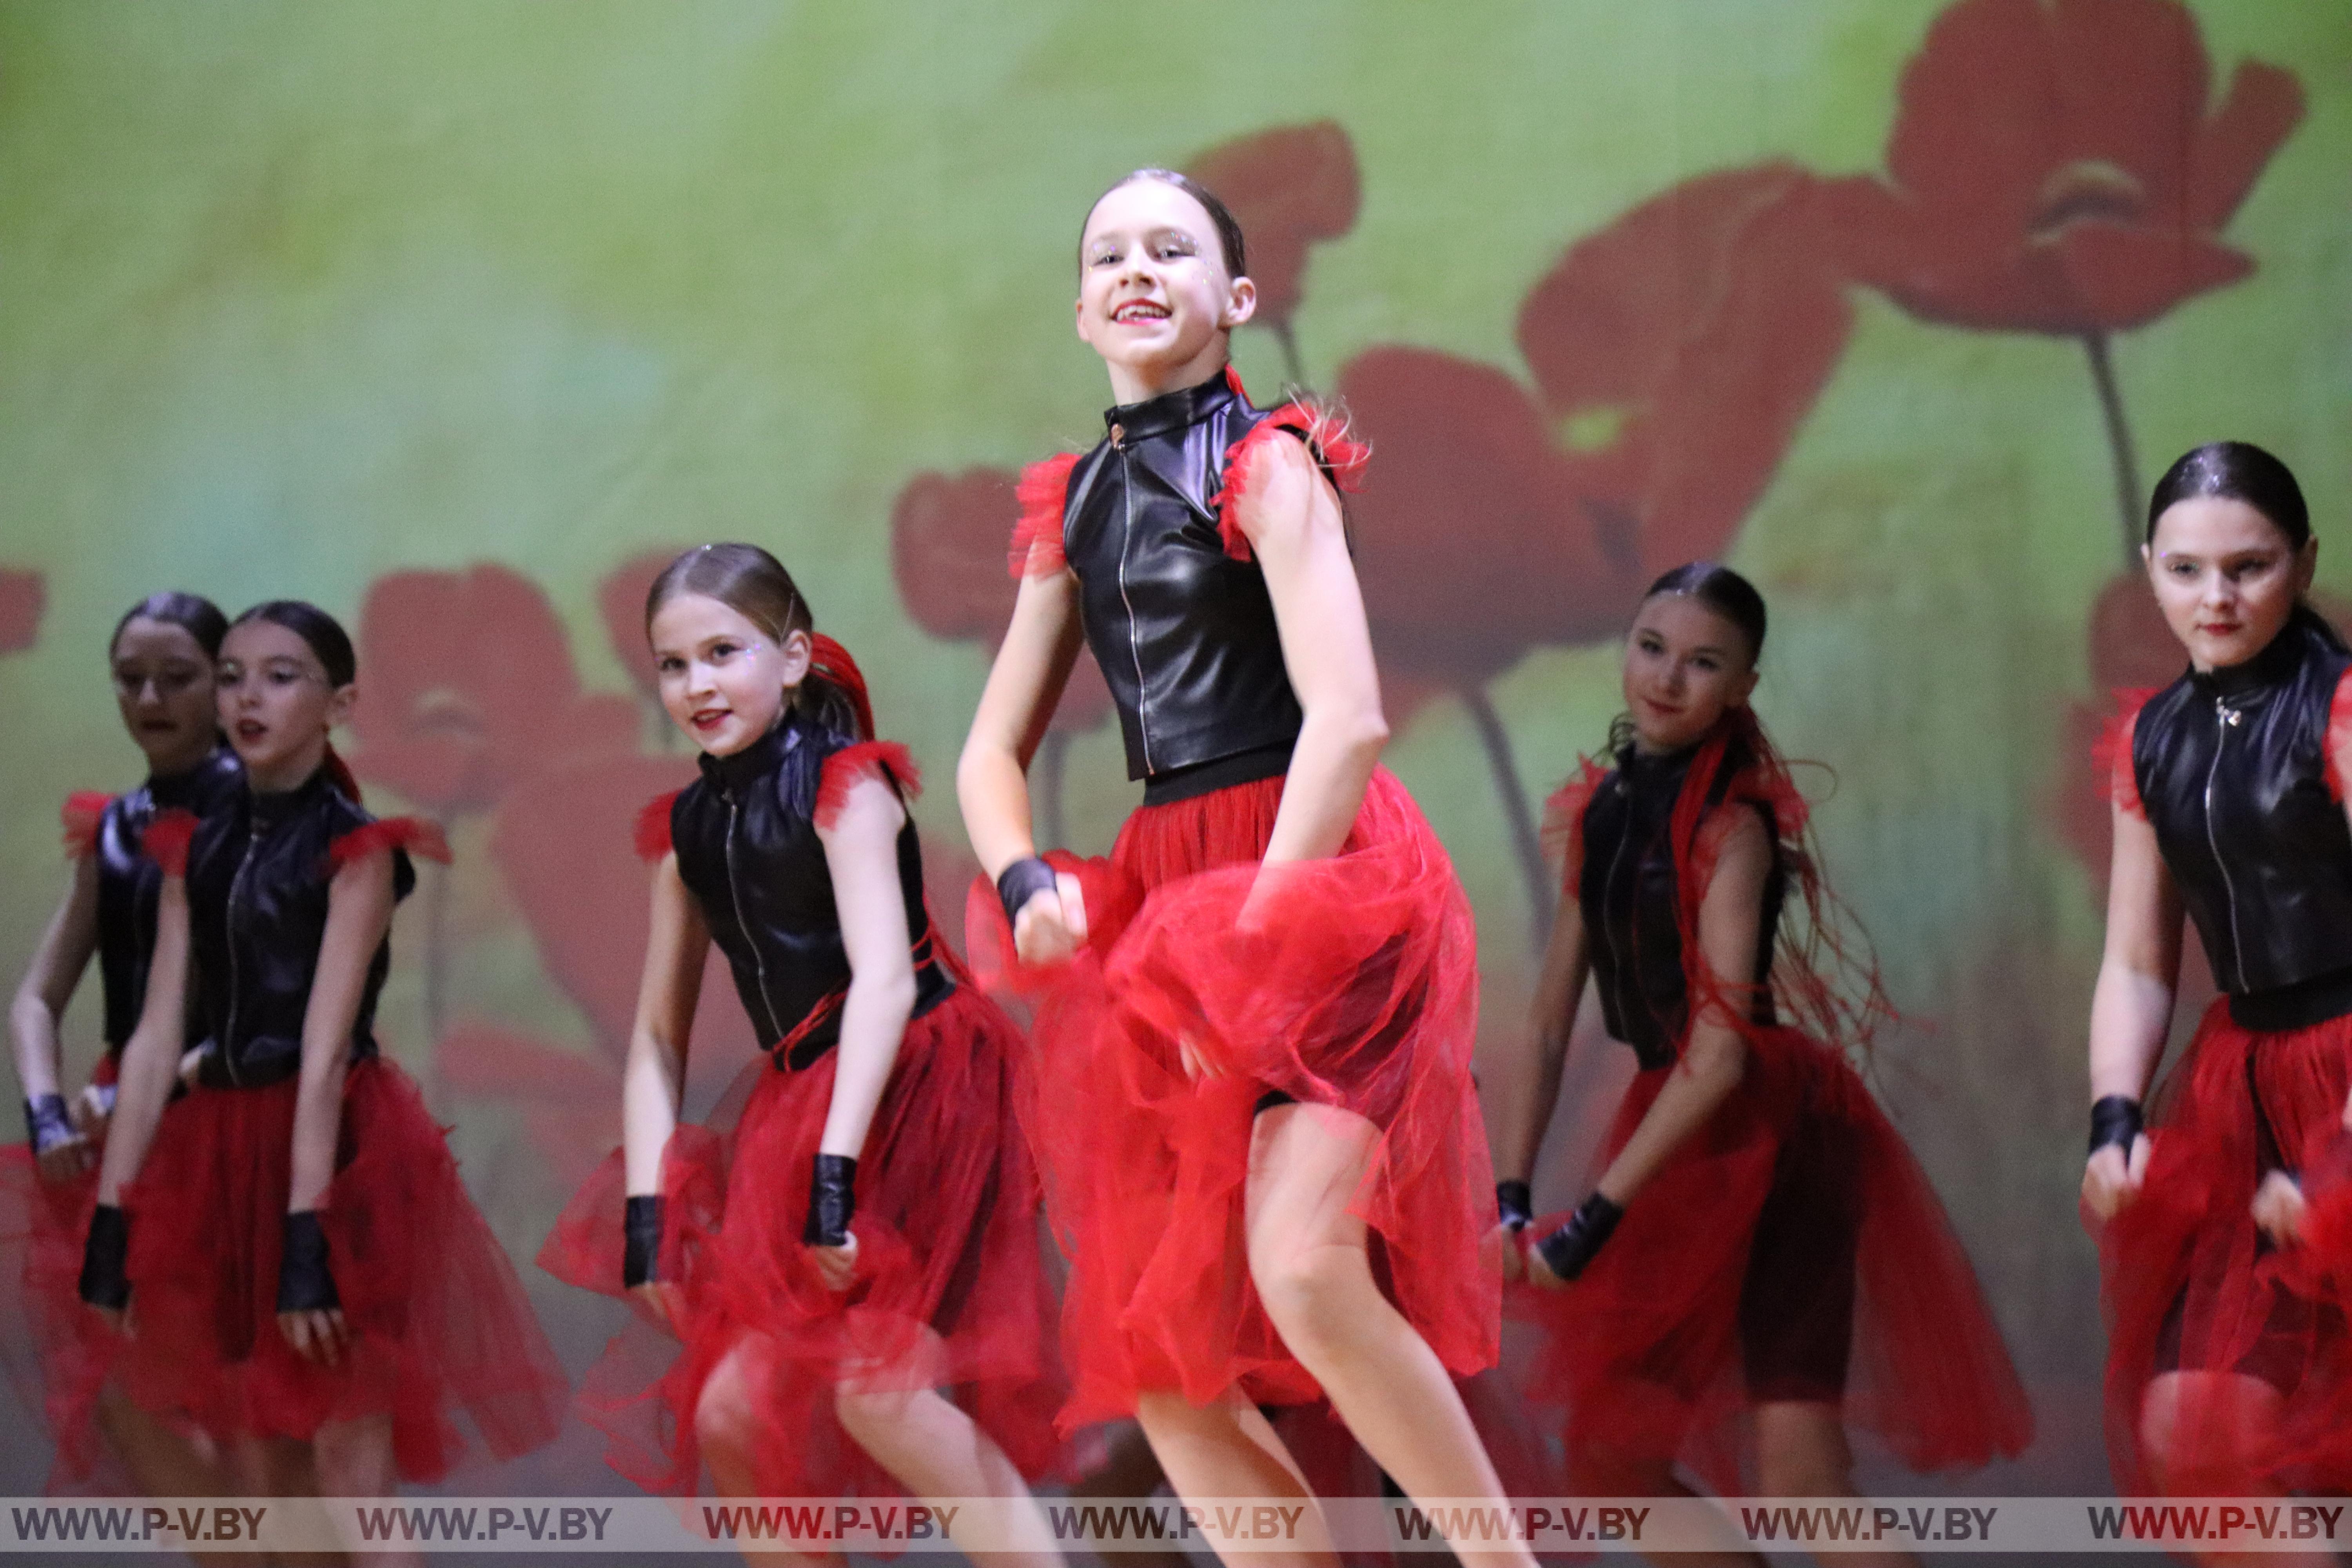 Танцевальный коллектив «Стрекоза» отметил свое десятилетие ярким творческим концертом